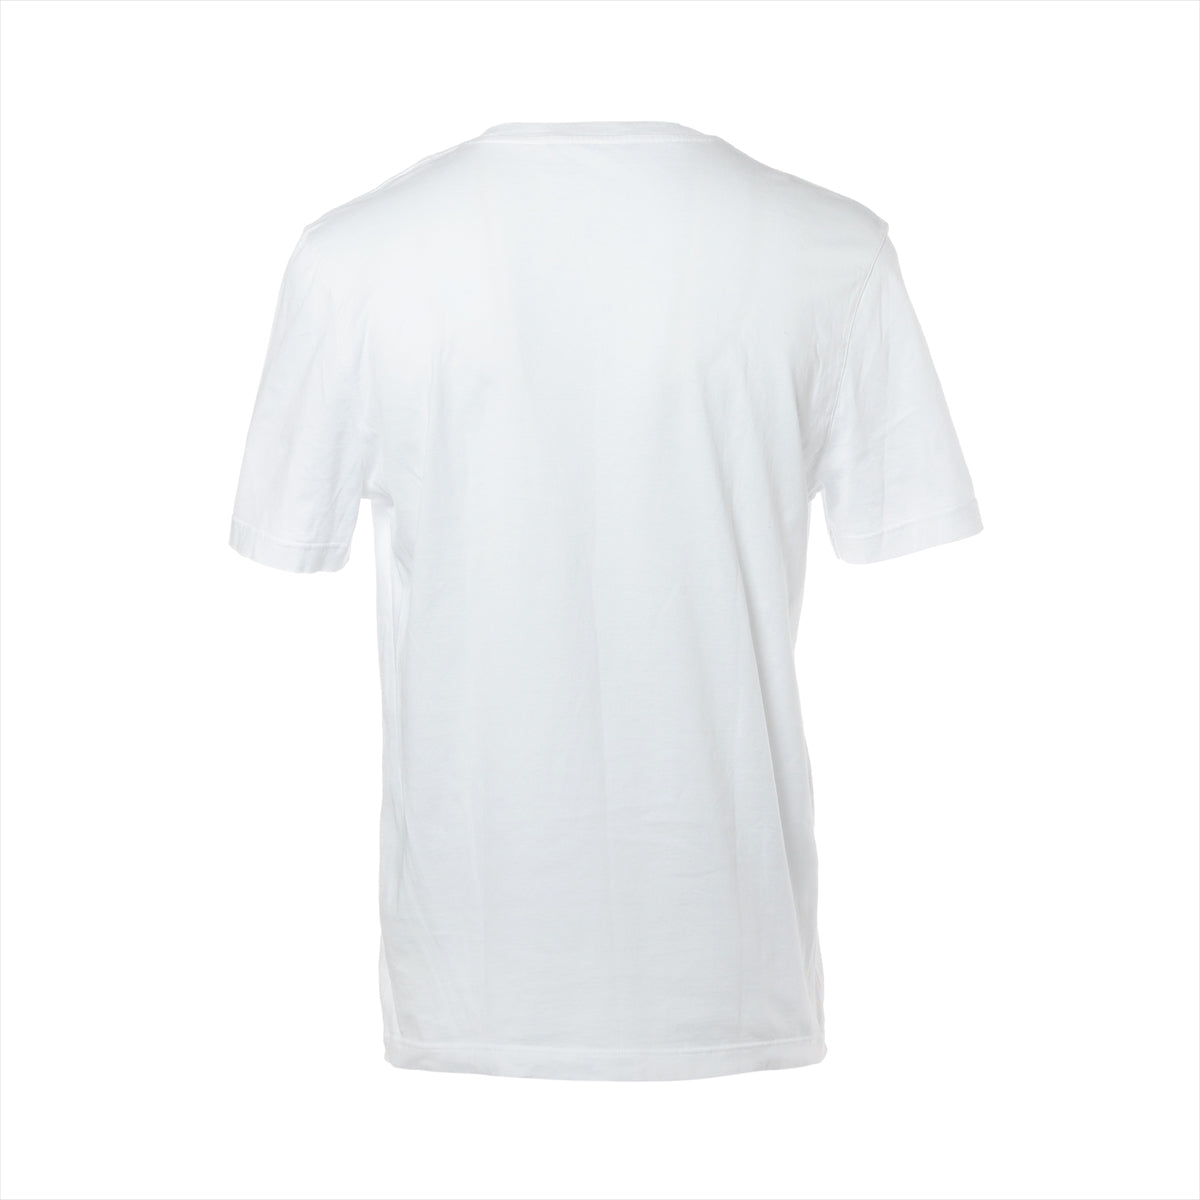 ルイヴィトン 20SS コットン Tシャツ L メンズ ホワイト  Vネック LVサークルロゴ